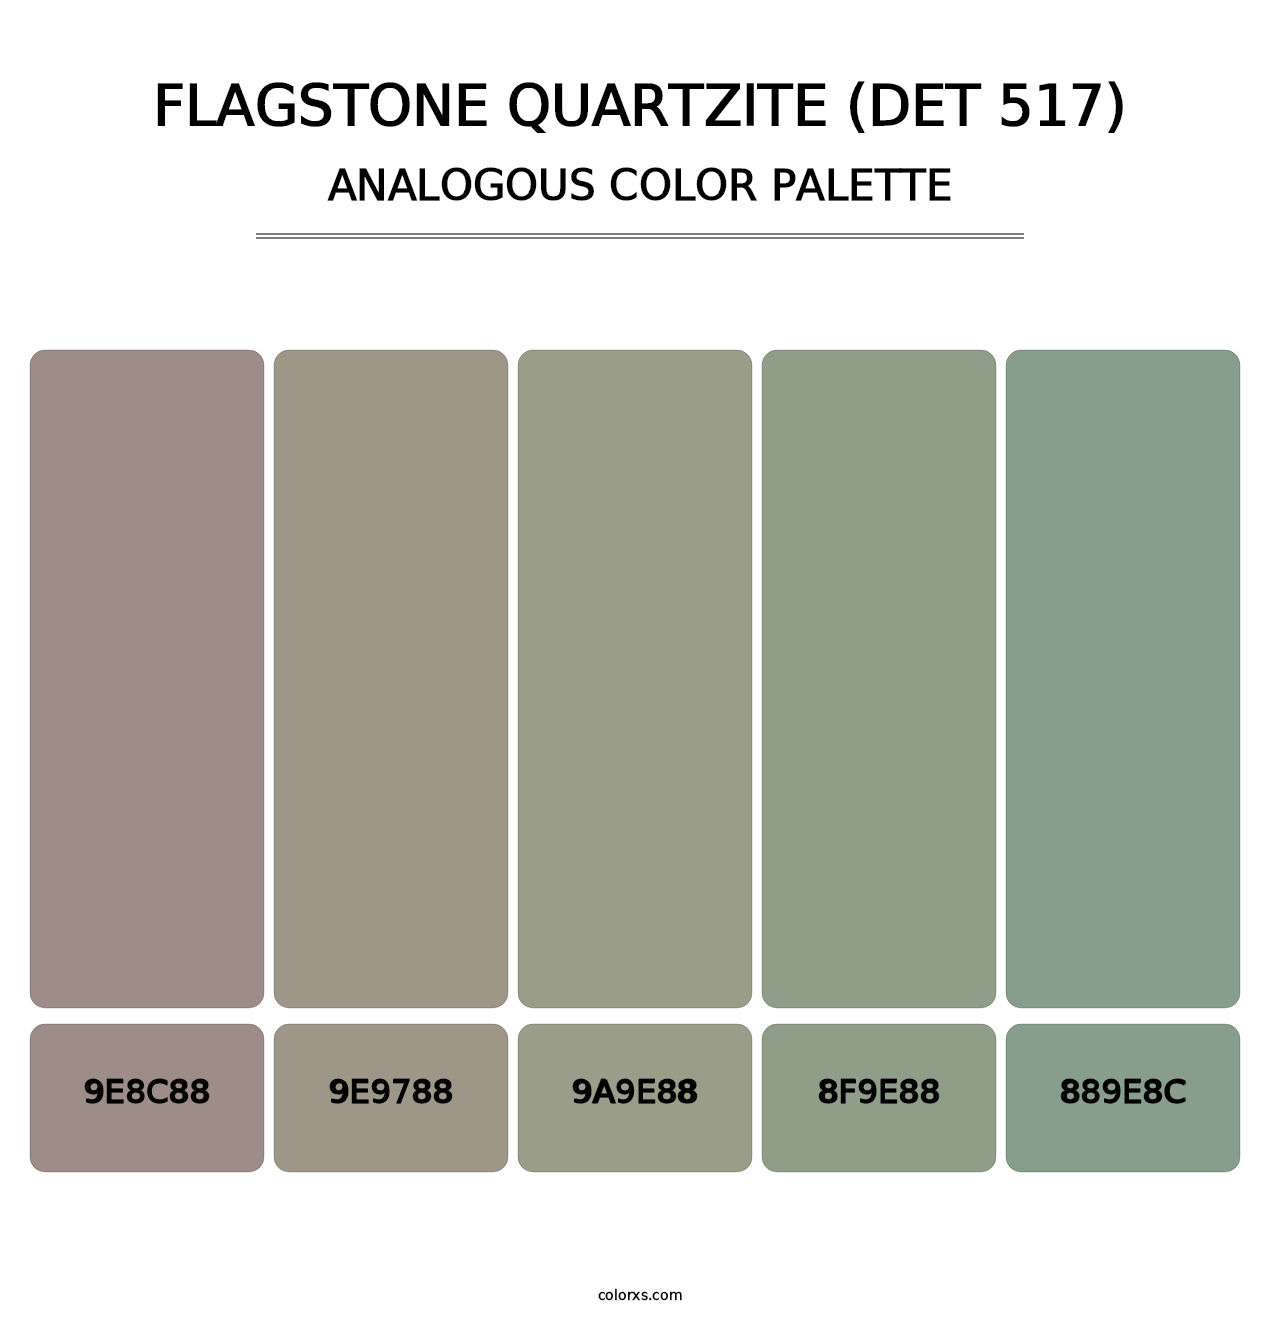 Flagstone Quartzite (DET 517) - Analogous Color Palette